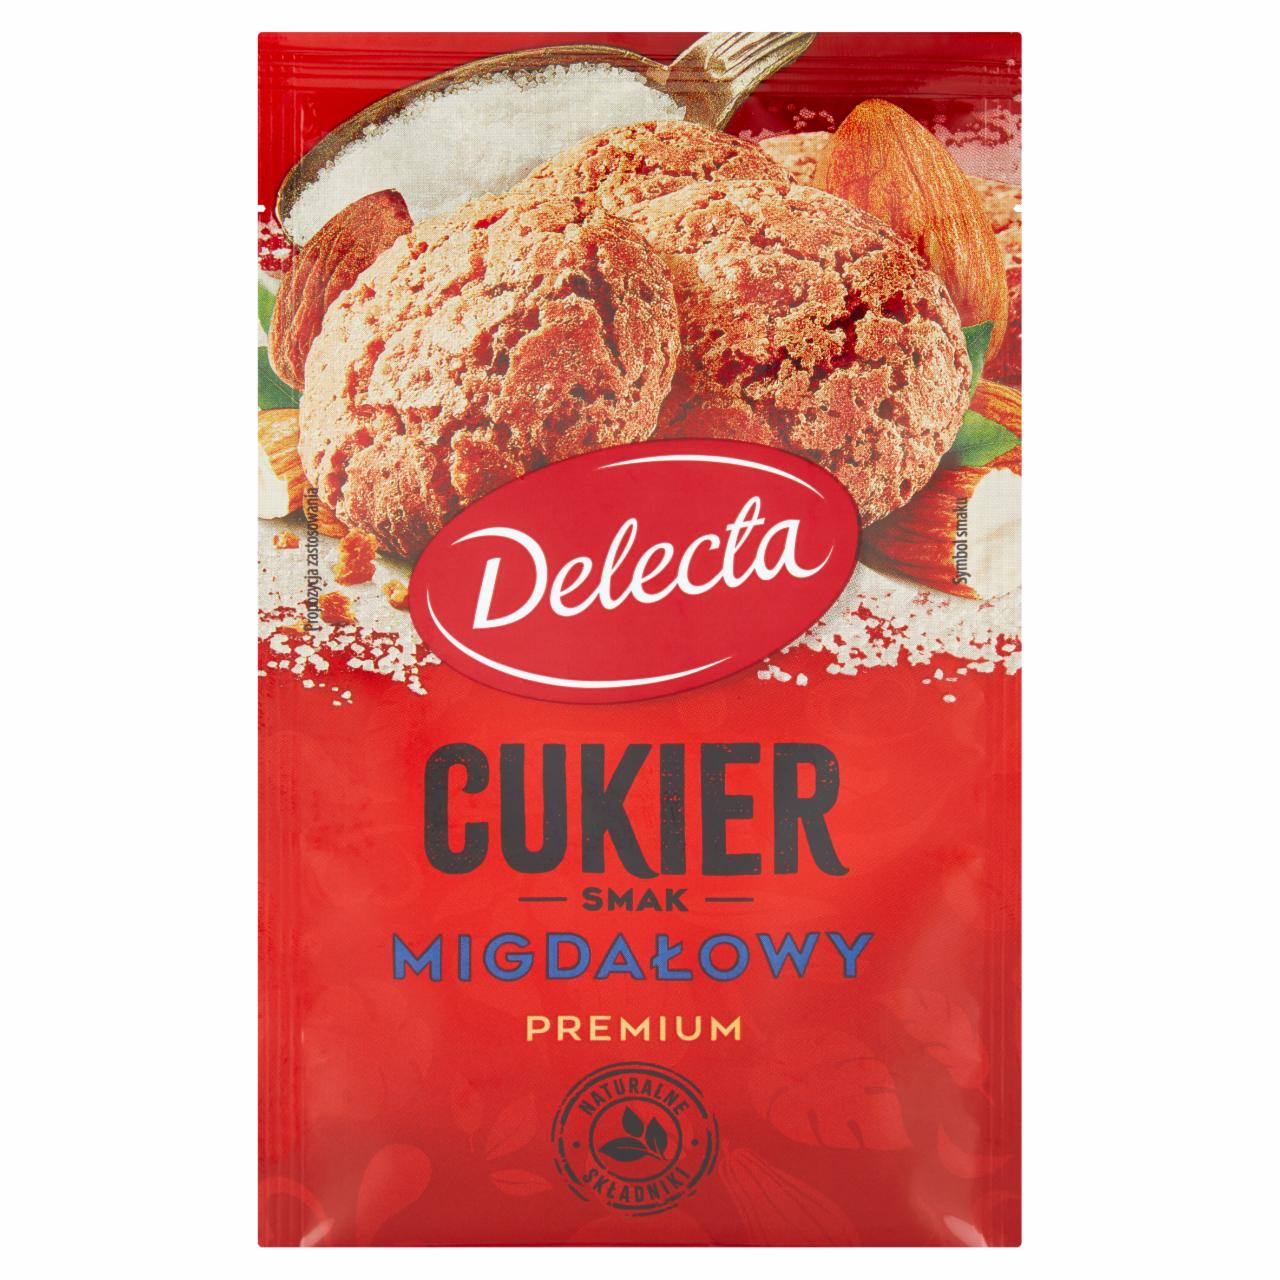 Zdjęcia - Delecta Premium Cukier smak migdałowy 15 g